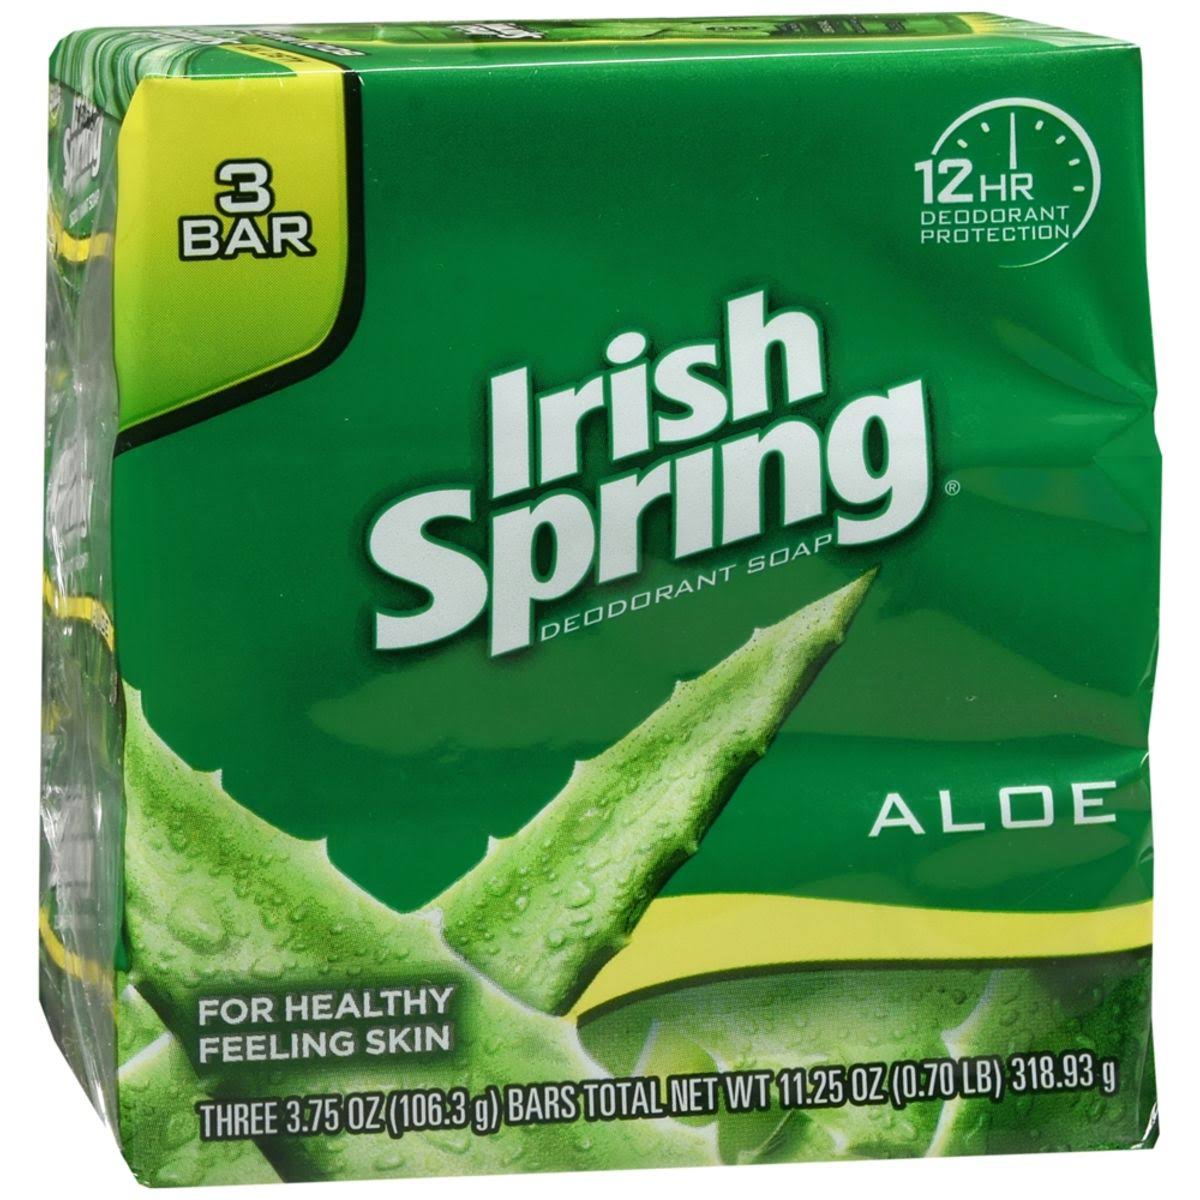 Irish Spring Aloe Deodorant Soap - 3 x 3.75 oz